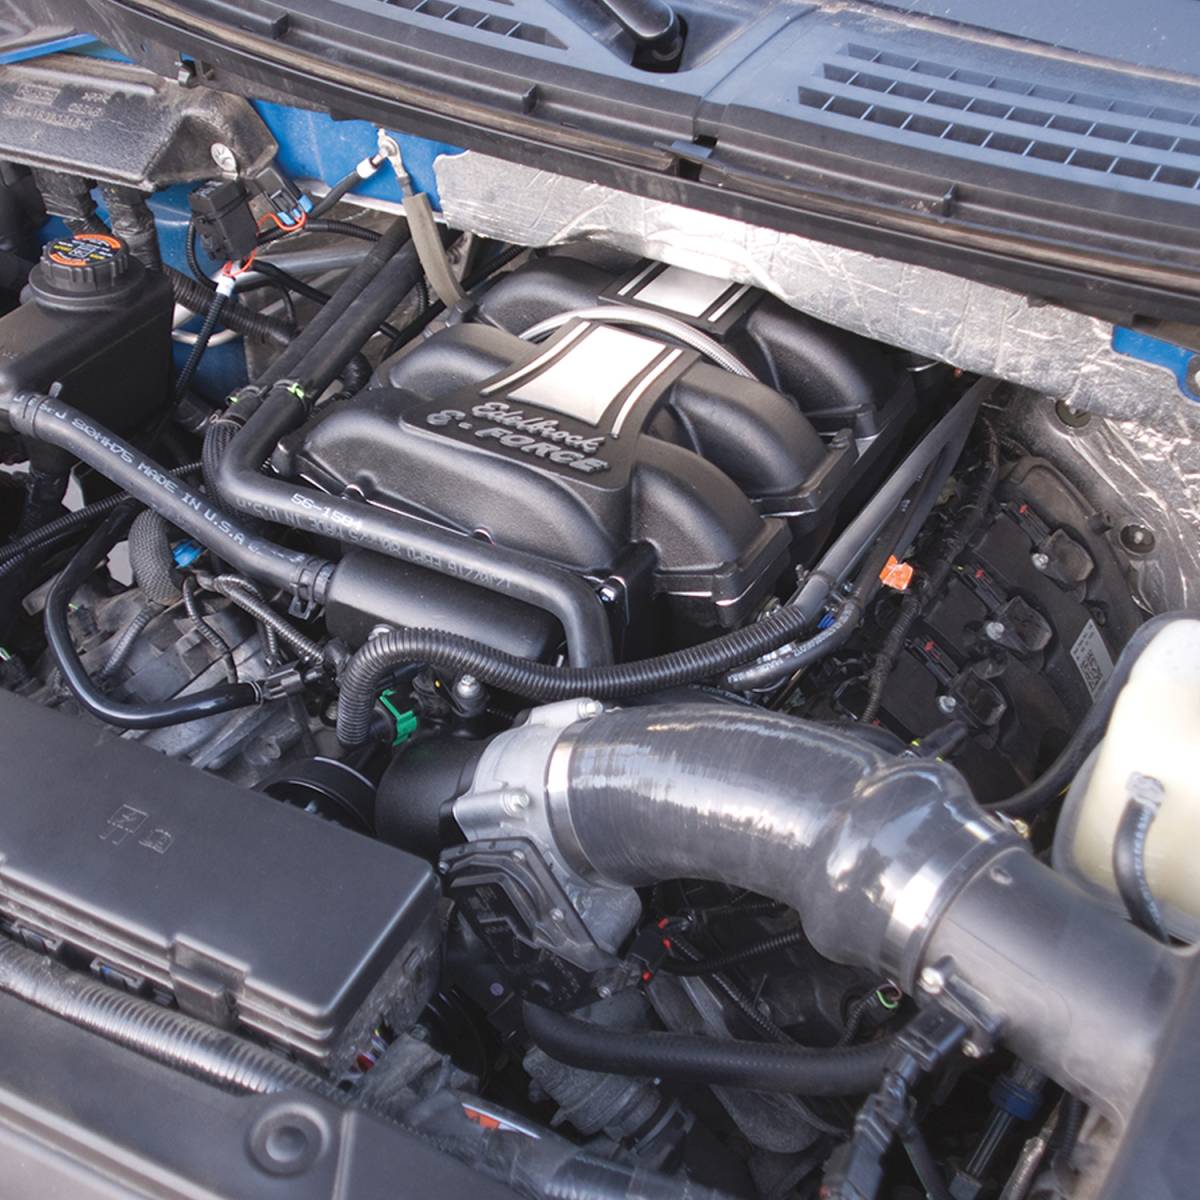 Edelbrock - Ford F-150 5.0L 4V 2011-2014 Edelbrock Stage 1 Complete Supercharger Intercooled Kit With Tune - Image 1